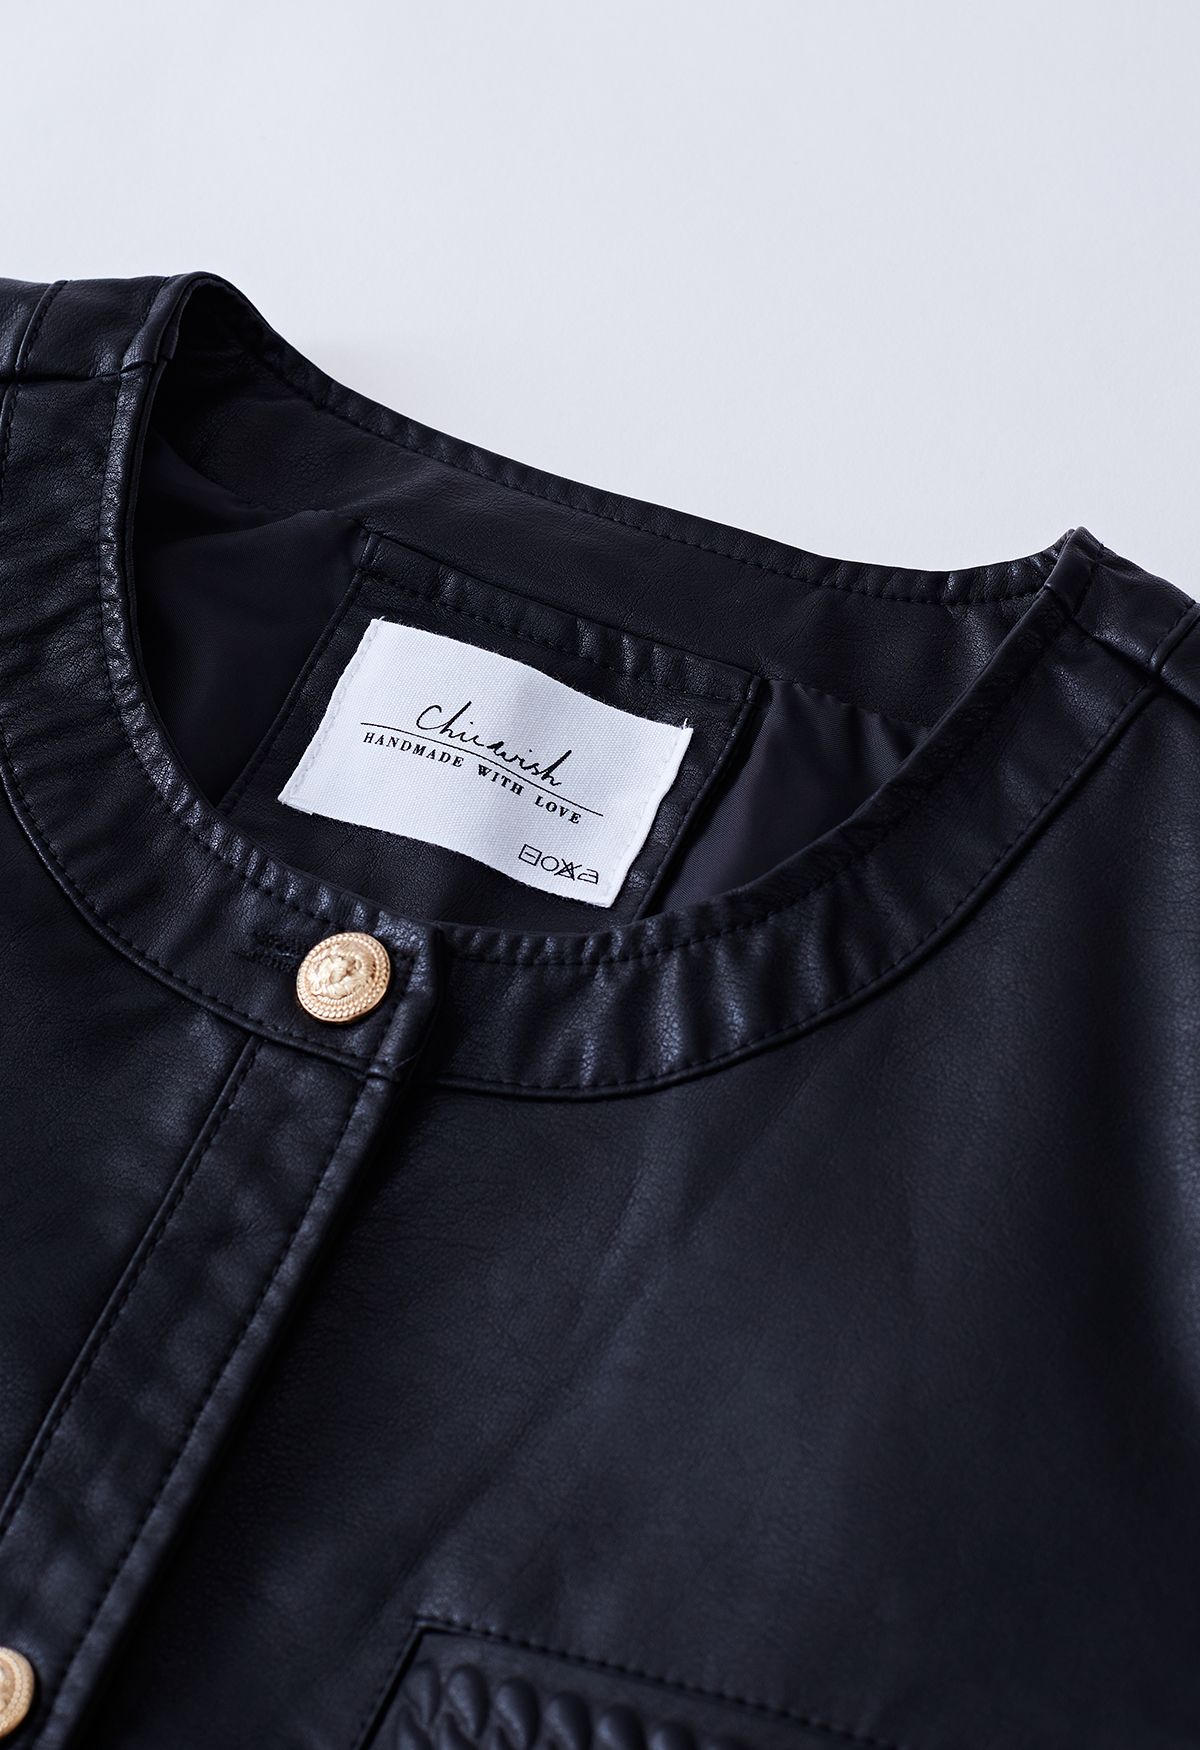 Welt Pocket Trim Faux Leather Jacket in Black